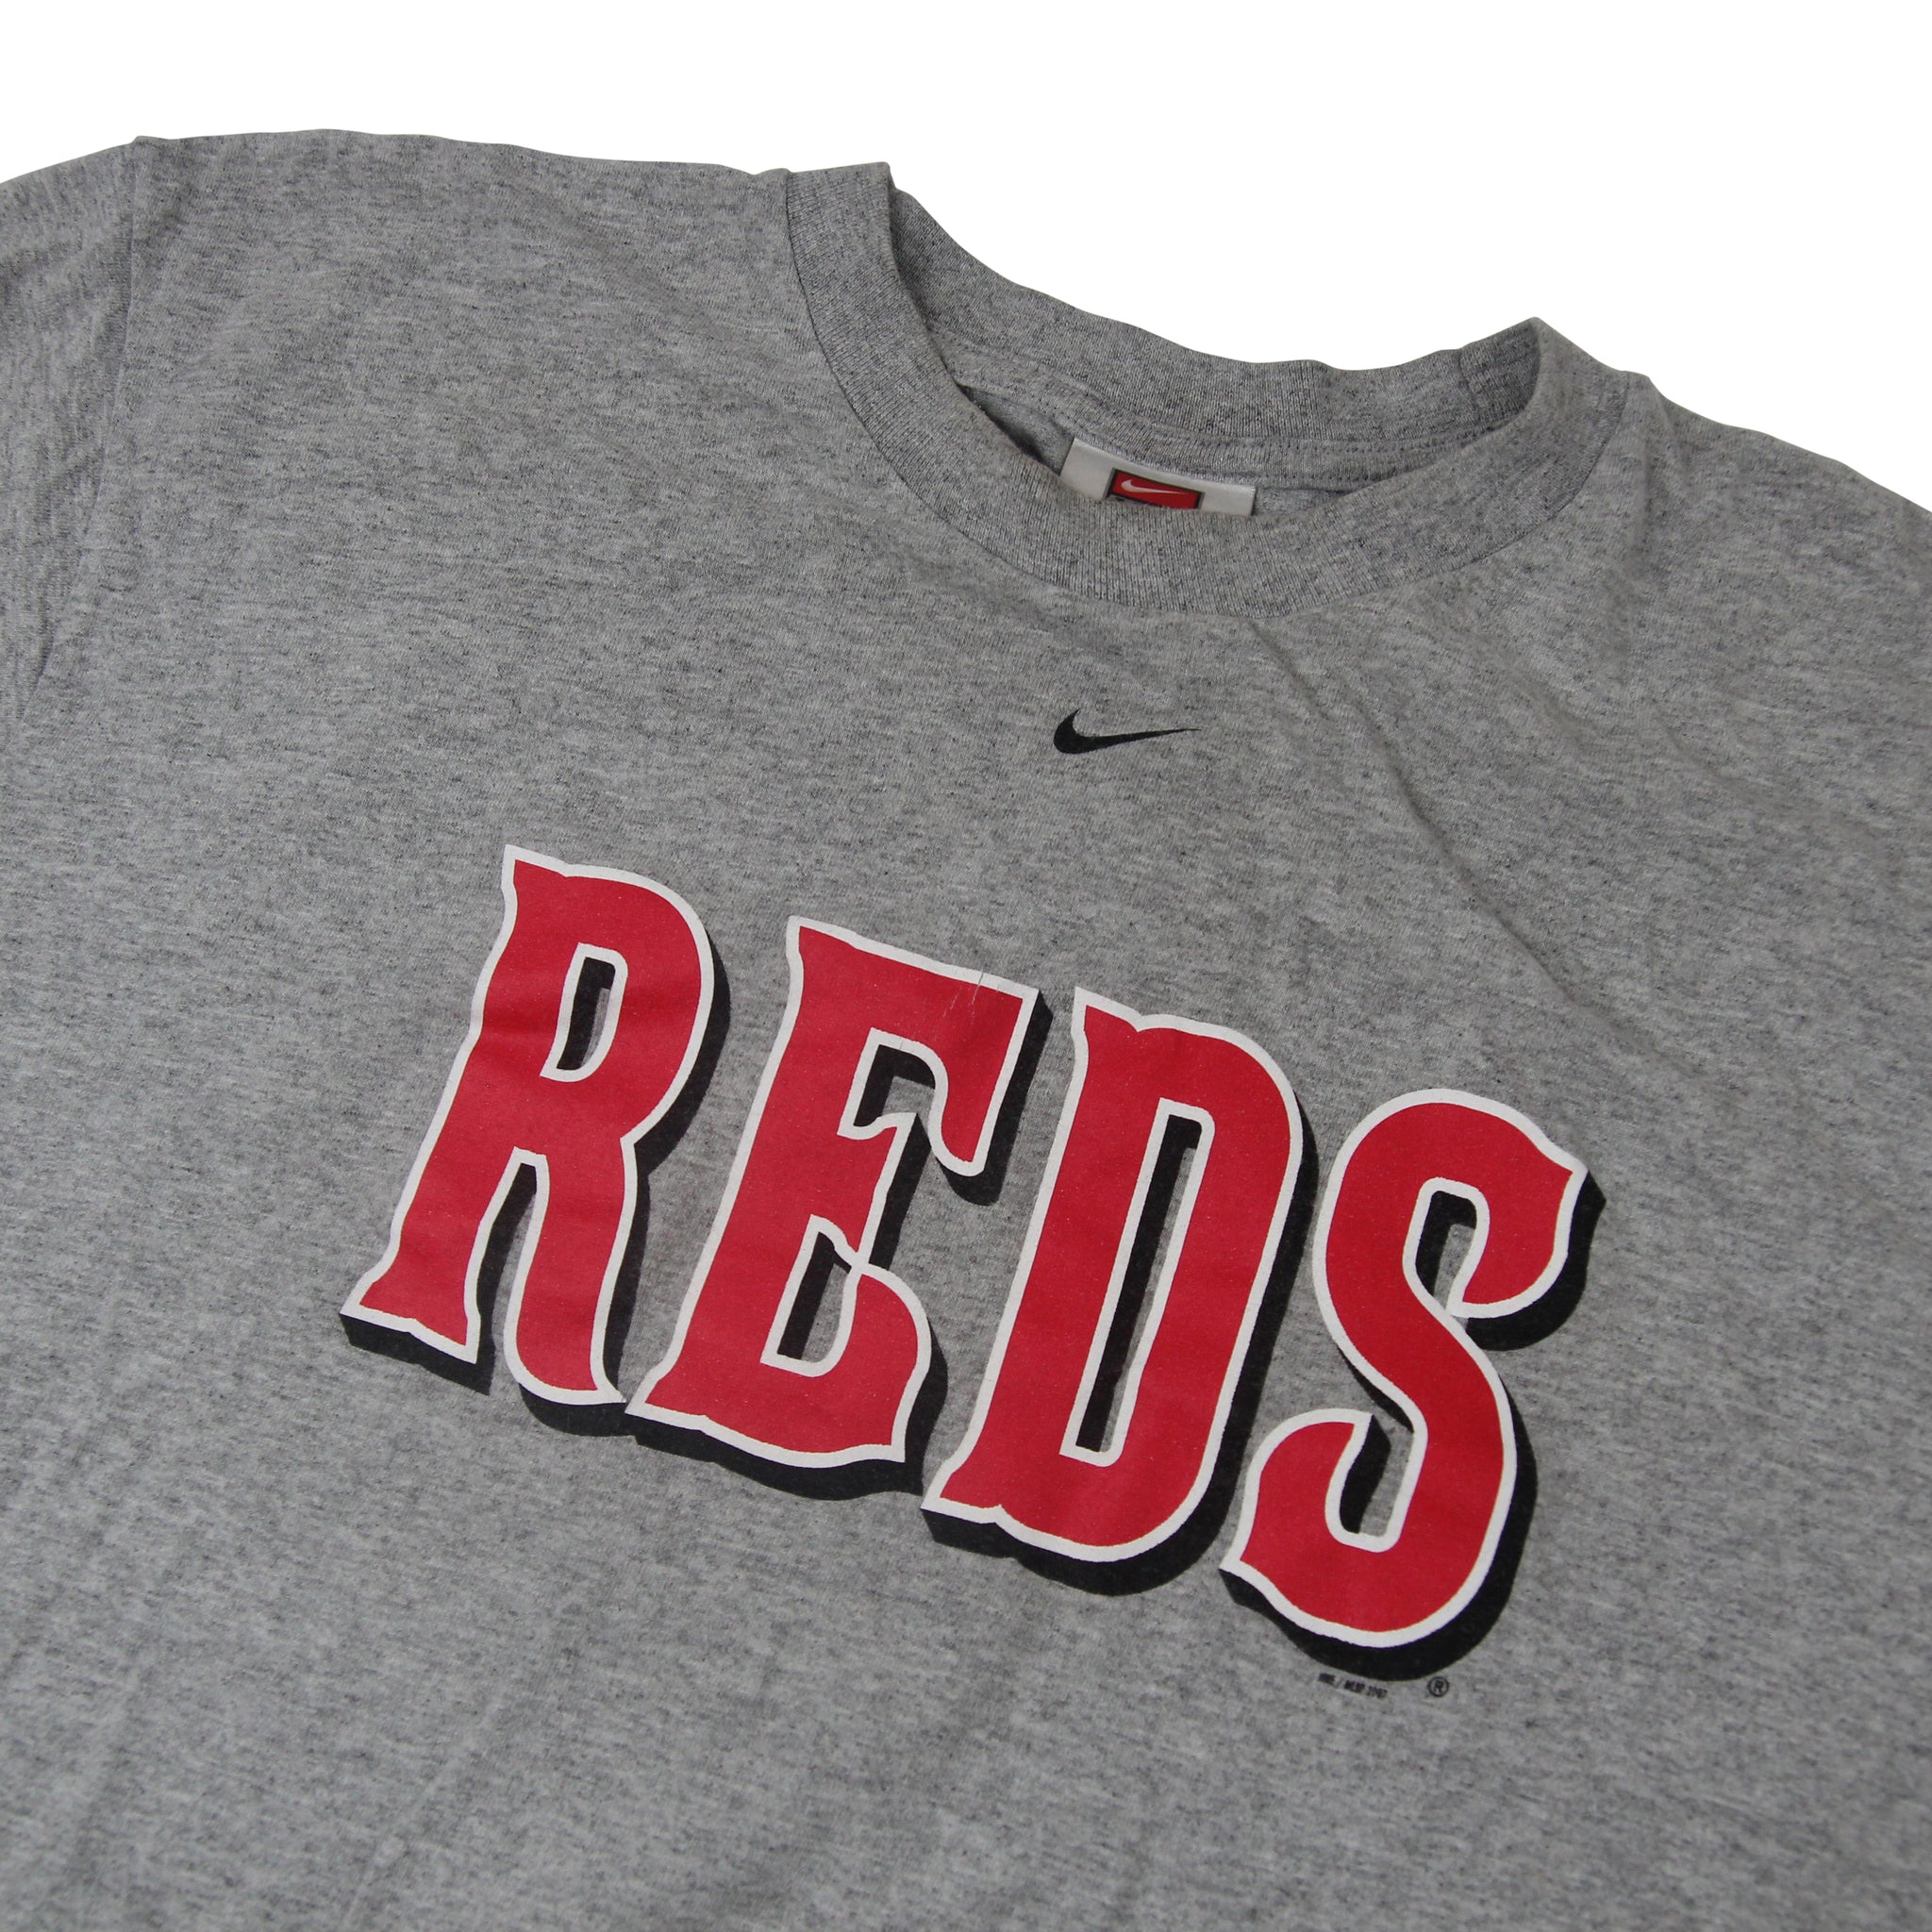 Vintage Nike Cincinnati Reds Graphic T Shirt - L – Jak of all Vintage